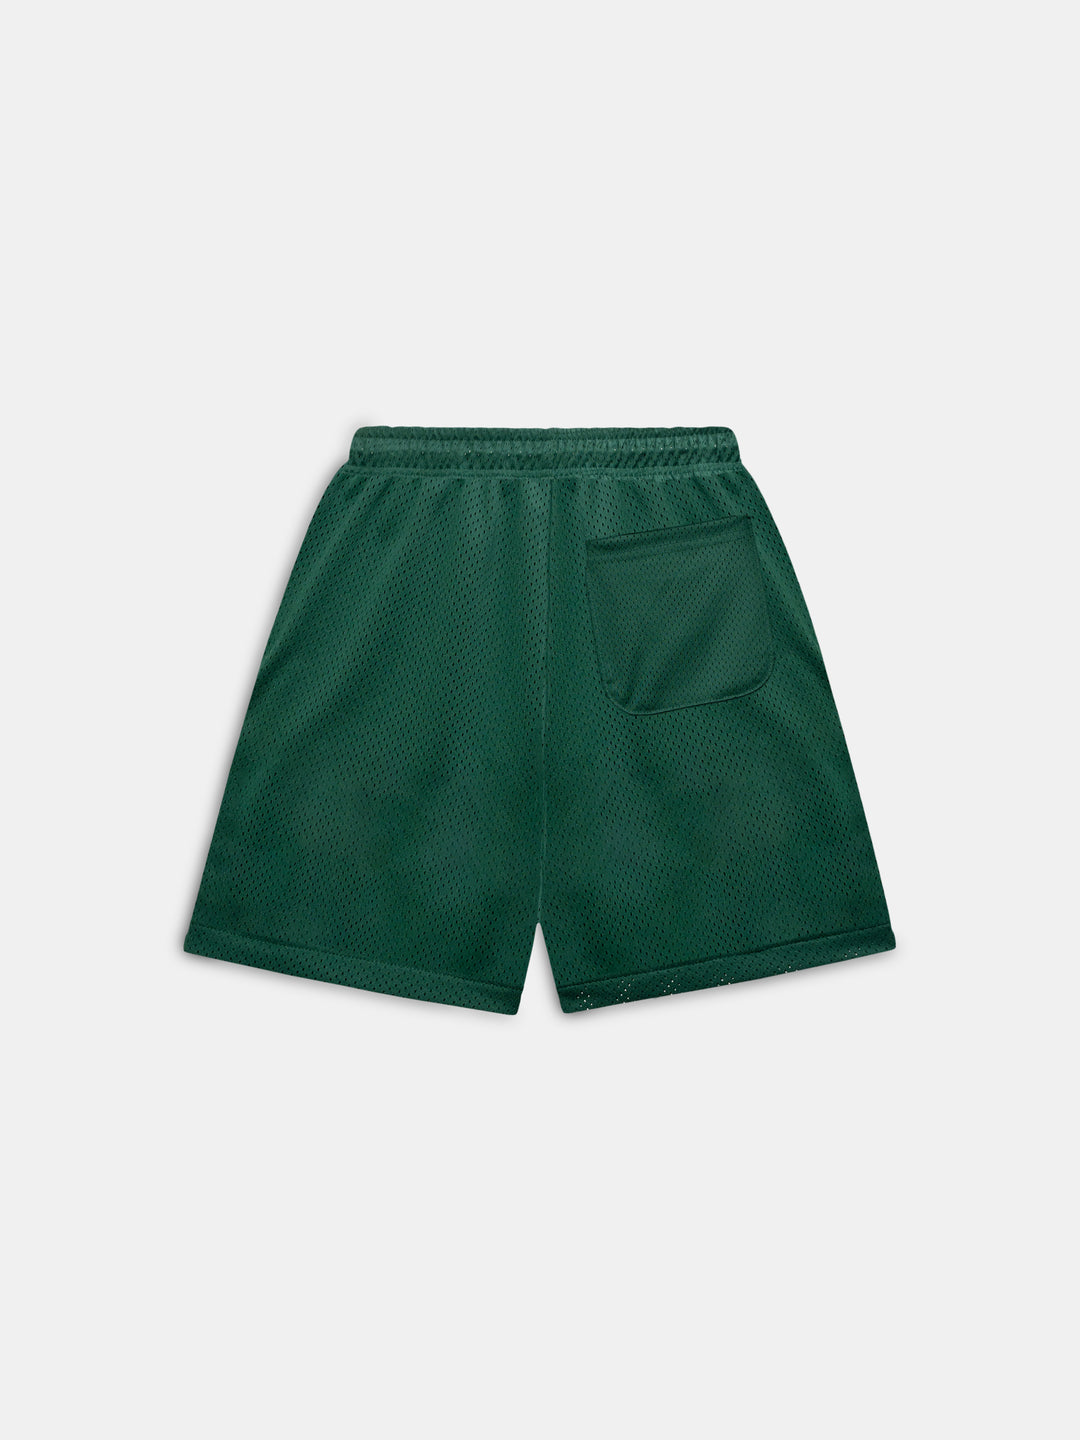 Fundamentals Mesh Shorts Ivy Green - Back